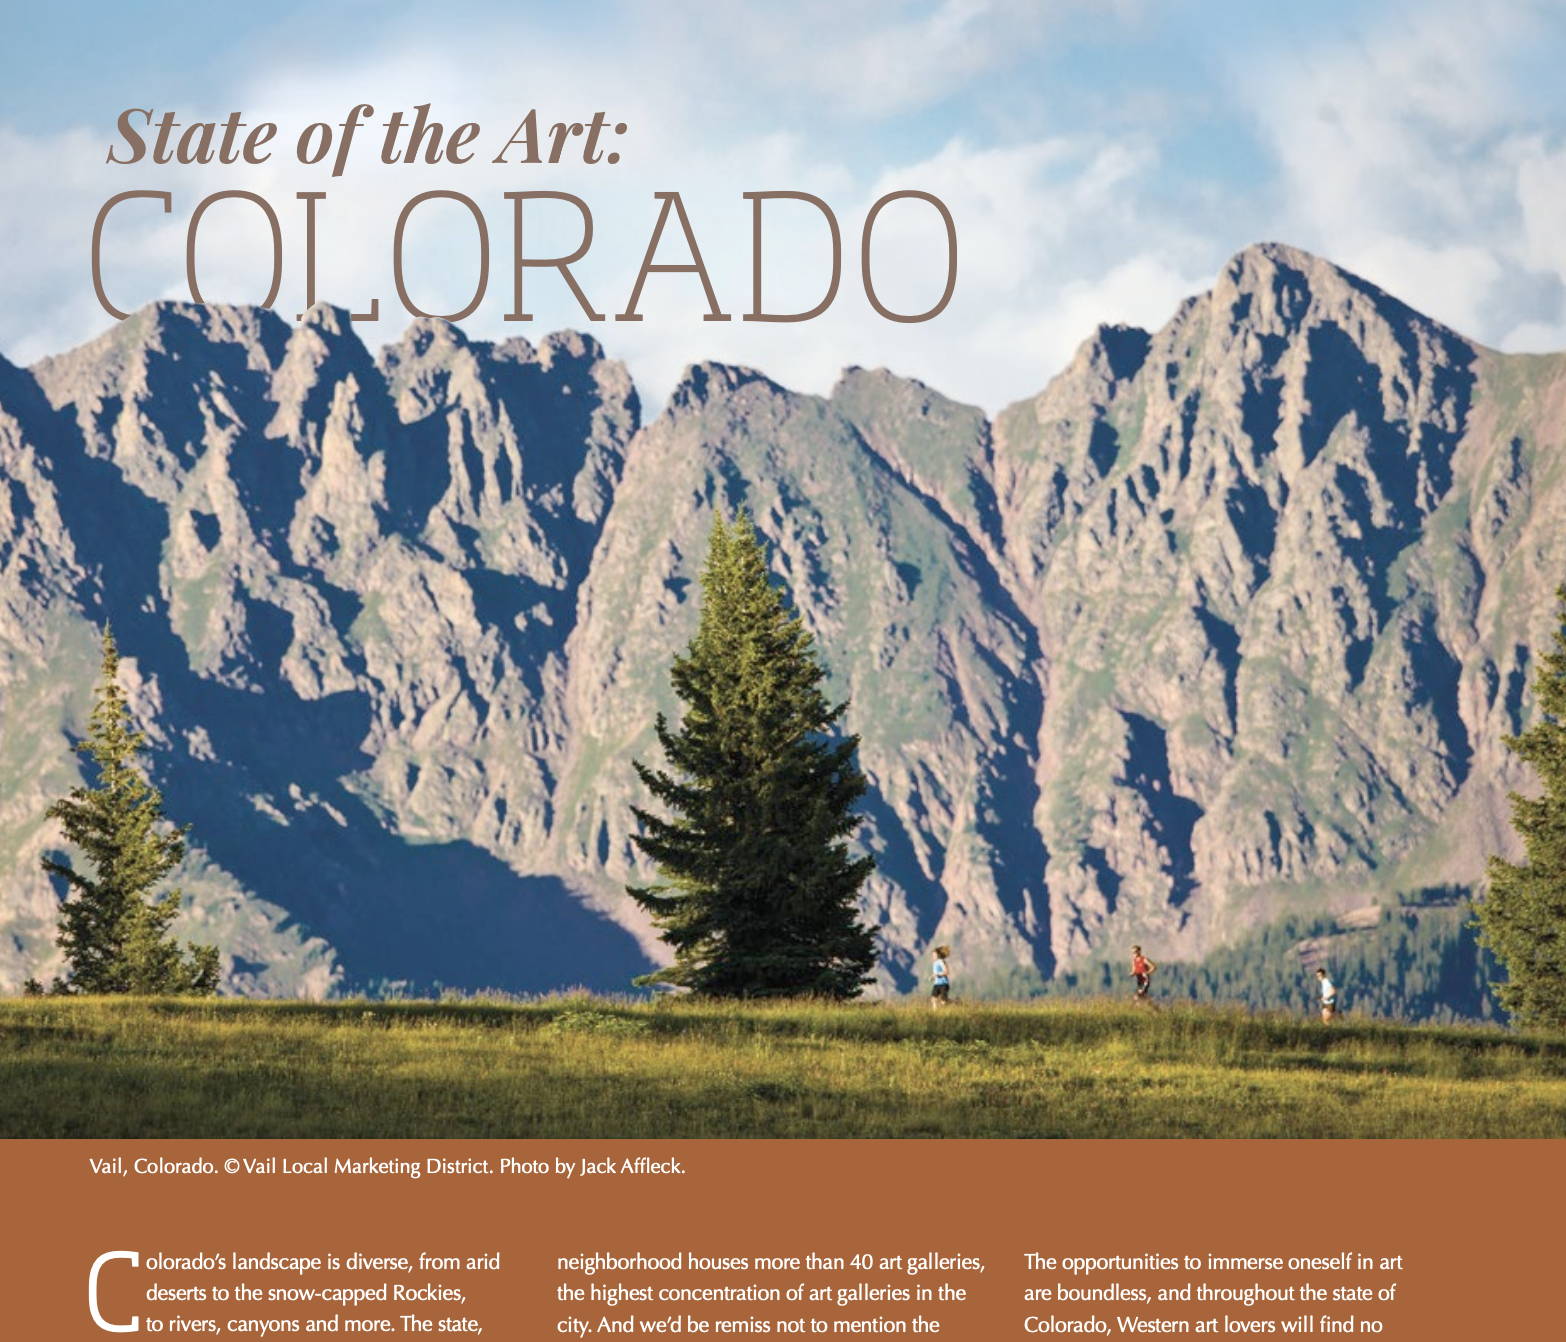 Colorado Art Gallery. David Yarrow. Sorrel Sky Gallery. Roberto Ugalde. Greg Overton.